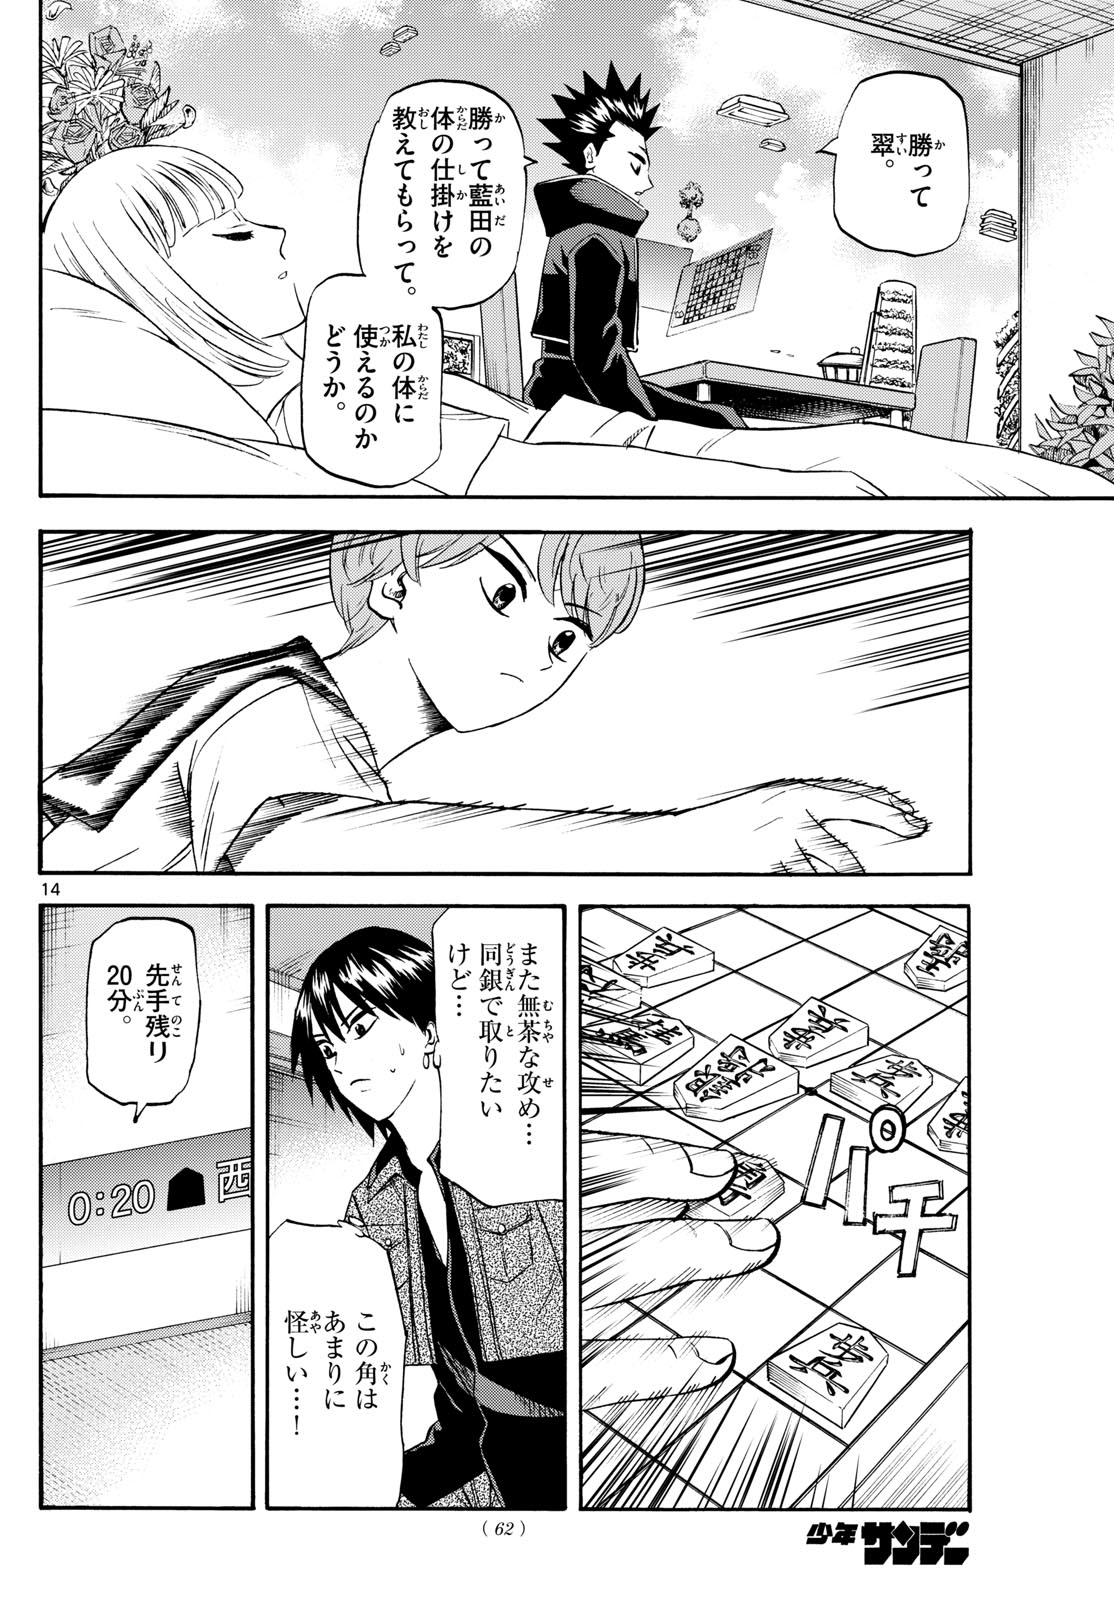 Tatsu to Ichigo - Chapter 194 - Page 14